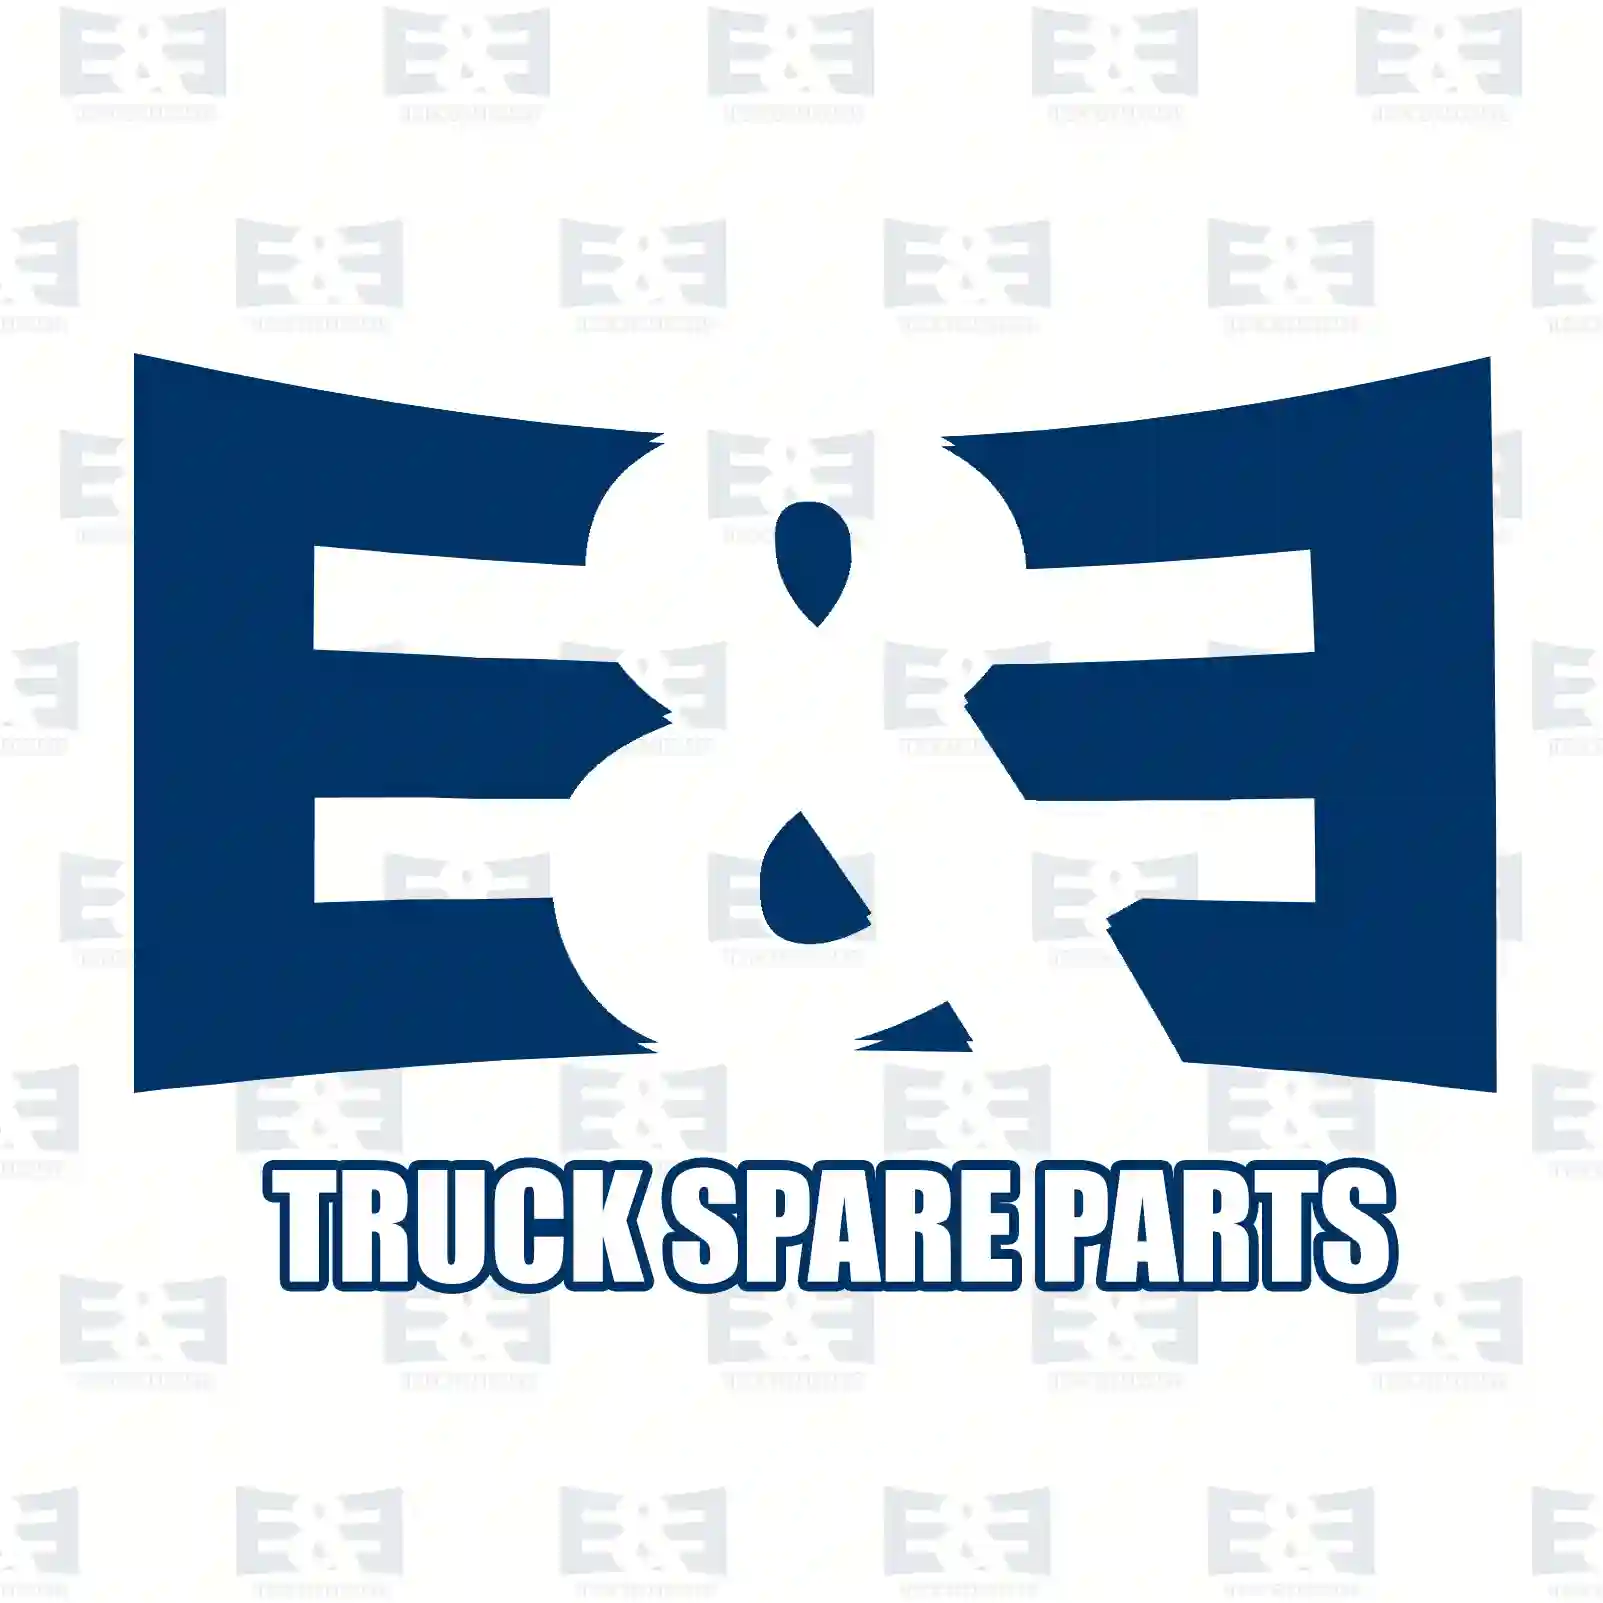 Brake disc, 2E2296262, 93197403, 40206-00Q0G, 480051, 4419359, 8200688880, , , , ||  2E2296262 E&E Truck Spare Parts | Truck Spare Parts, Auotomotive Spare Parts Brake disc, 2E2296262, 93197403, 40206-00Q0G, 480051, 4419359, 8200688880, , , , ||  2E2296262 E&E Truck Spare Parts | Truck Spare Parts, Auotomotive Spare Parts